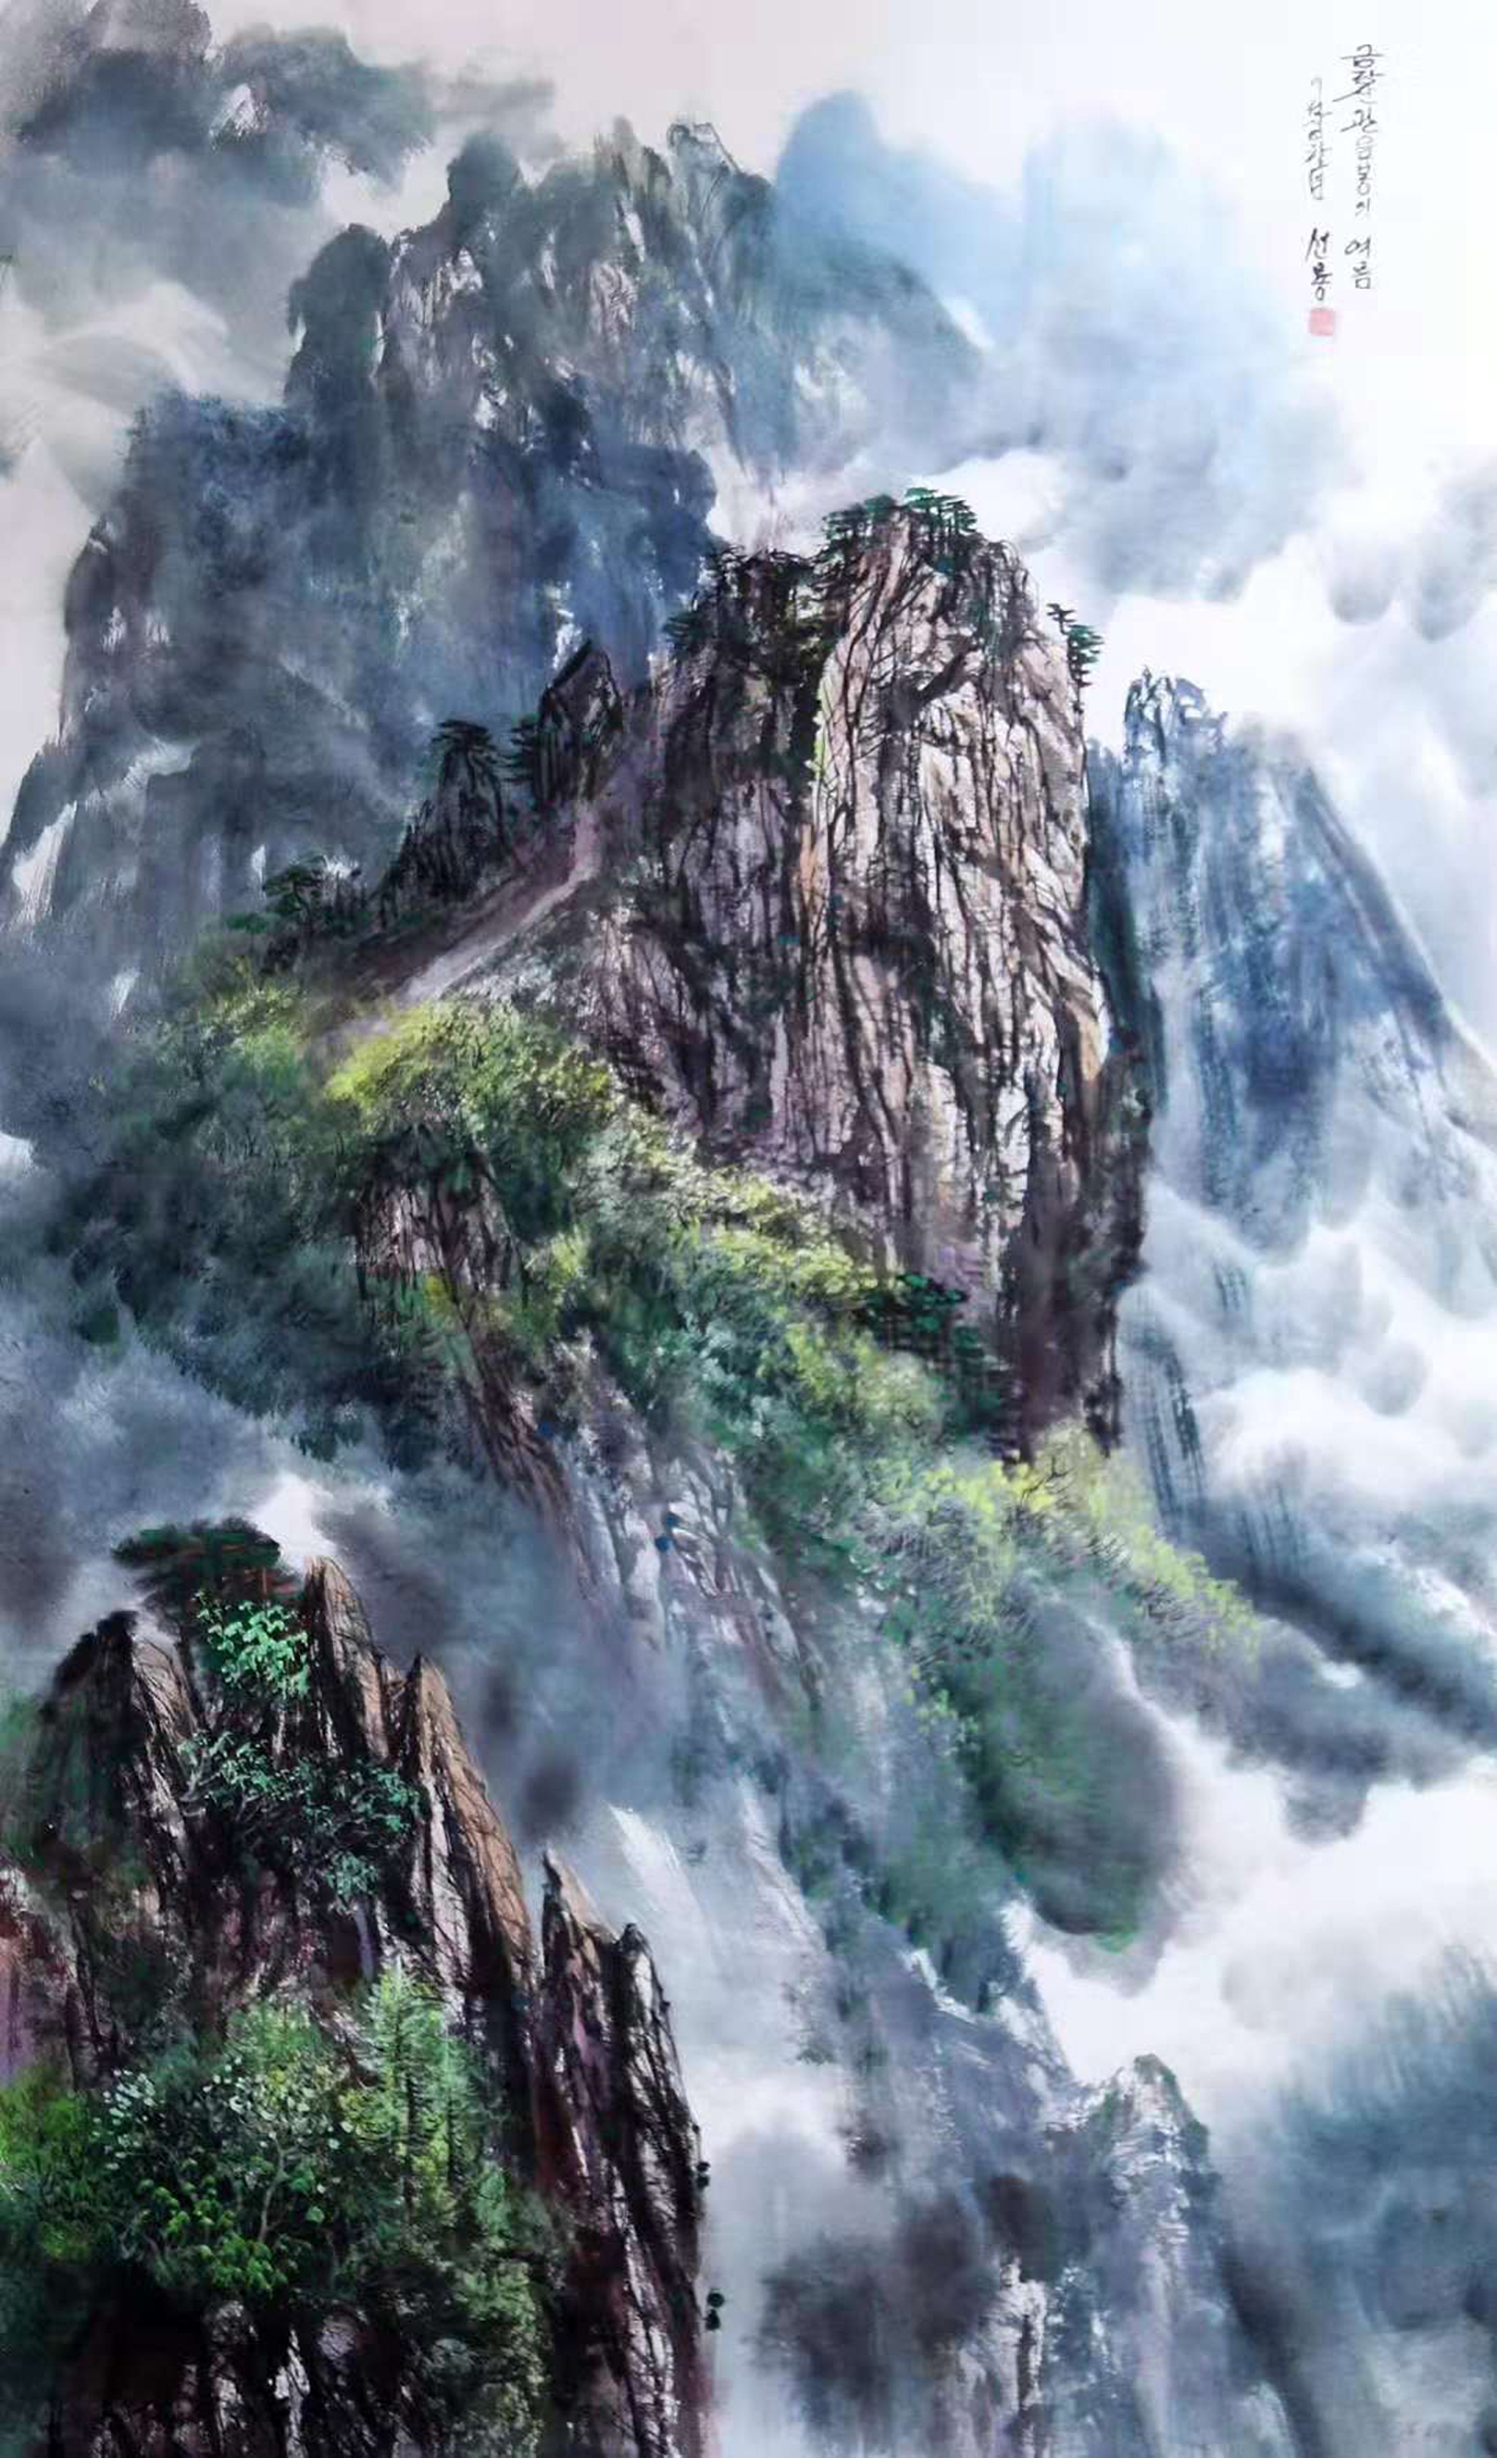 水墨山水画:一组用彩墨描绘瀑布山川的山水画,请欣赏